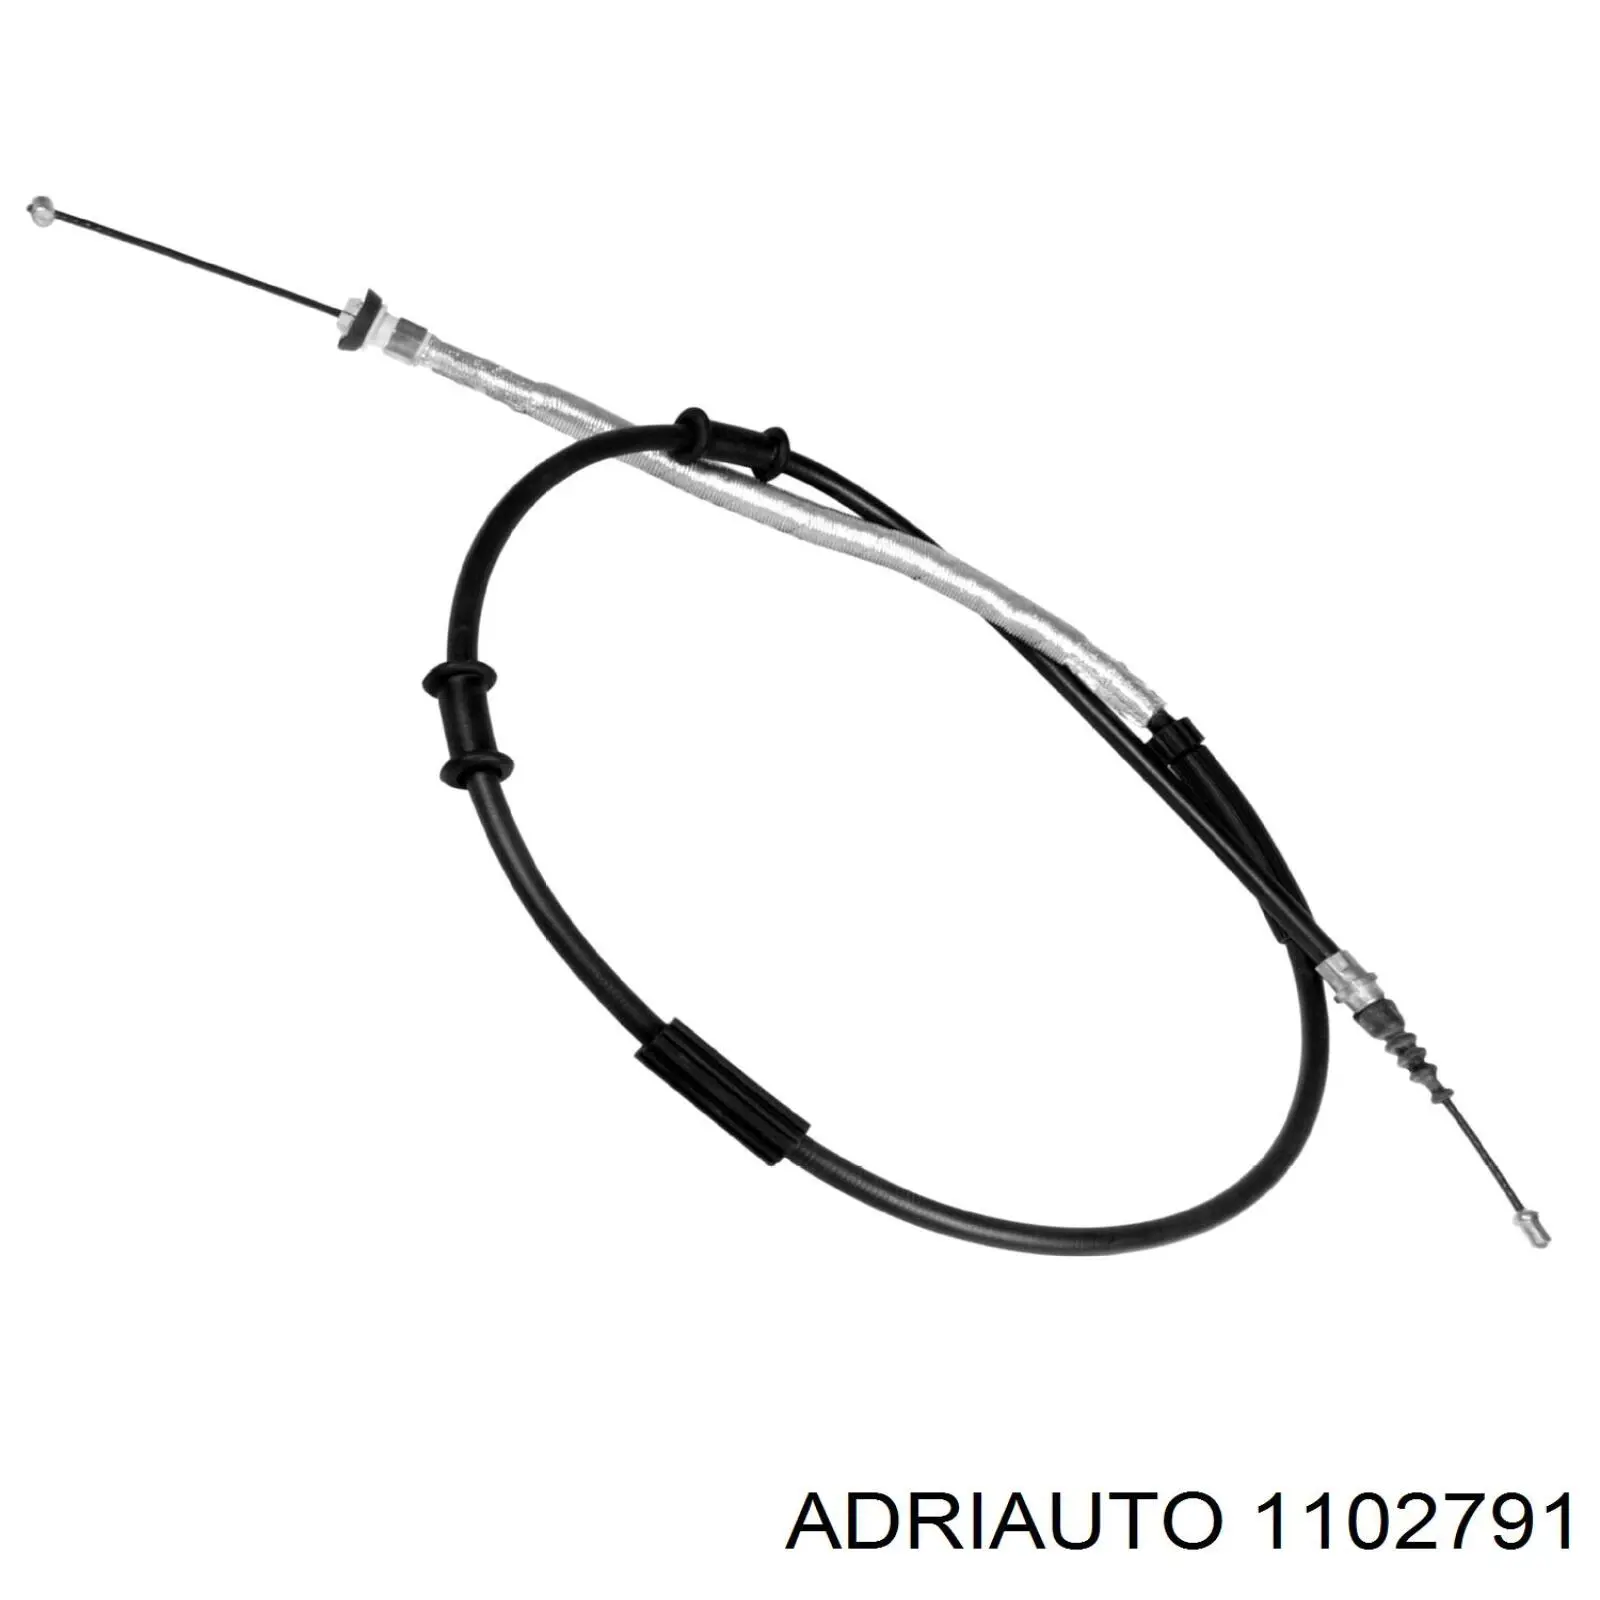 1102791 Adriauto cable de freno de mano trasero derecho/izquierdo